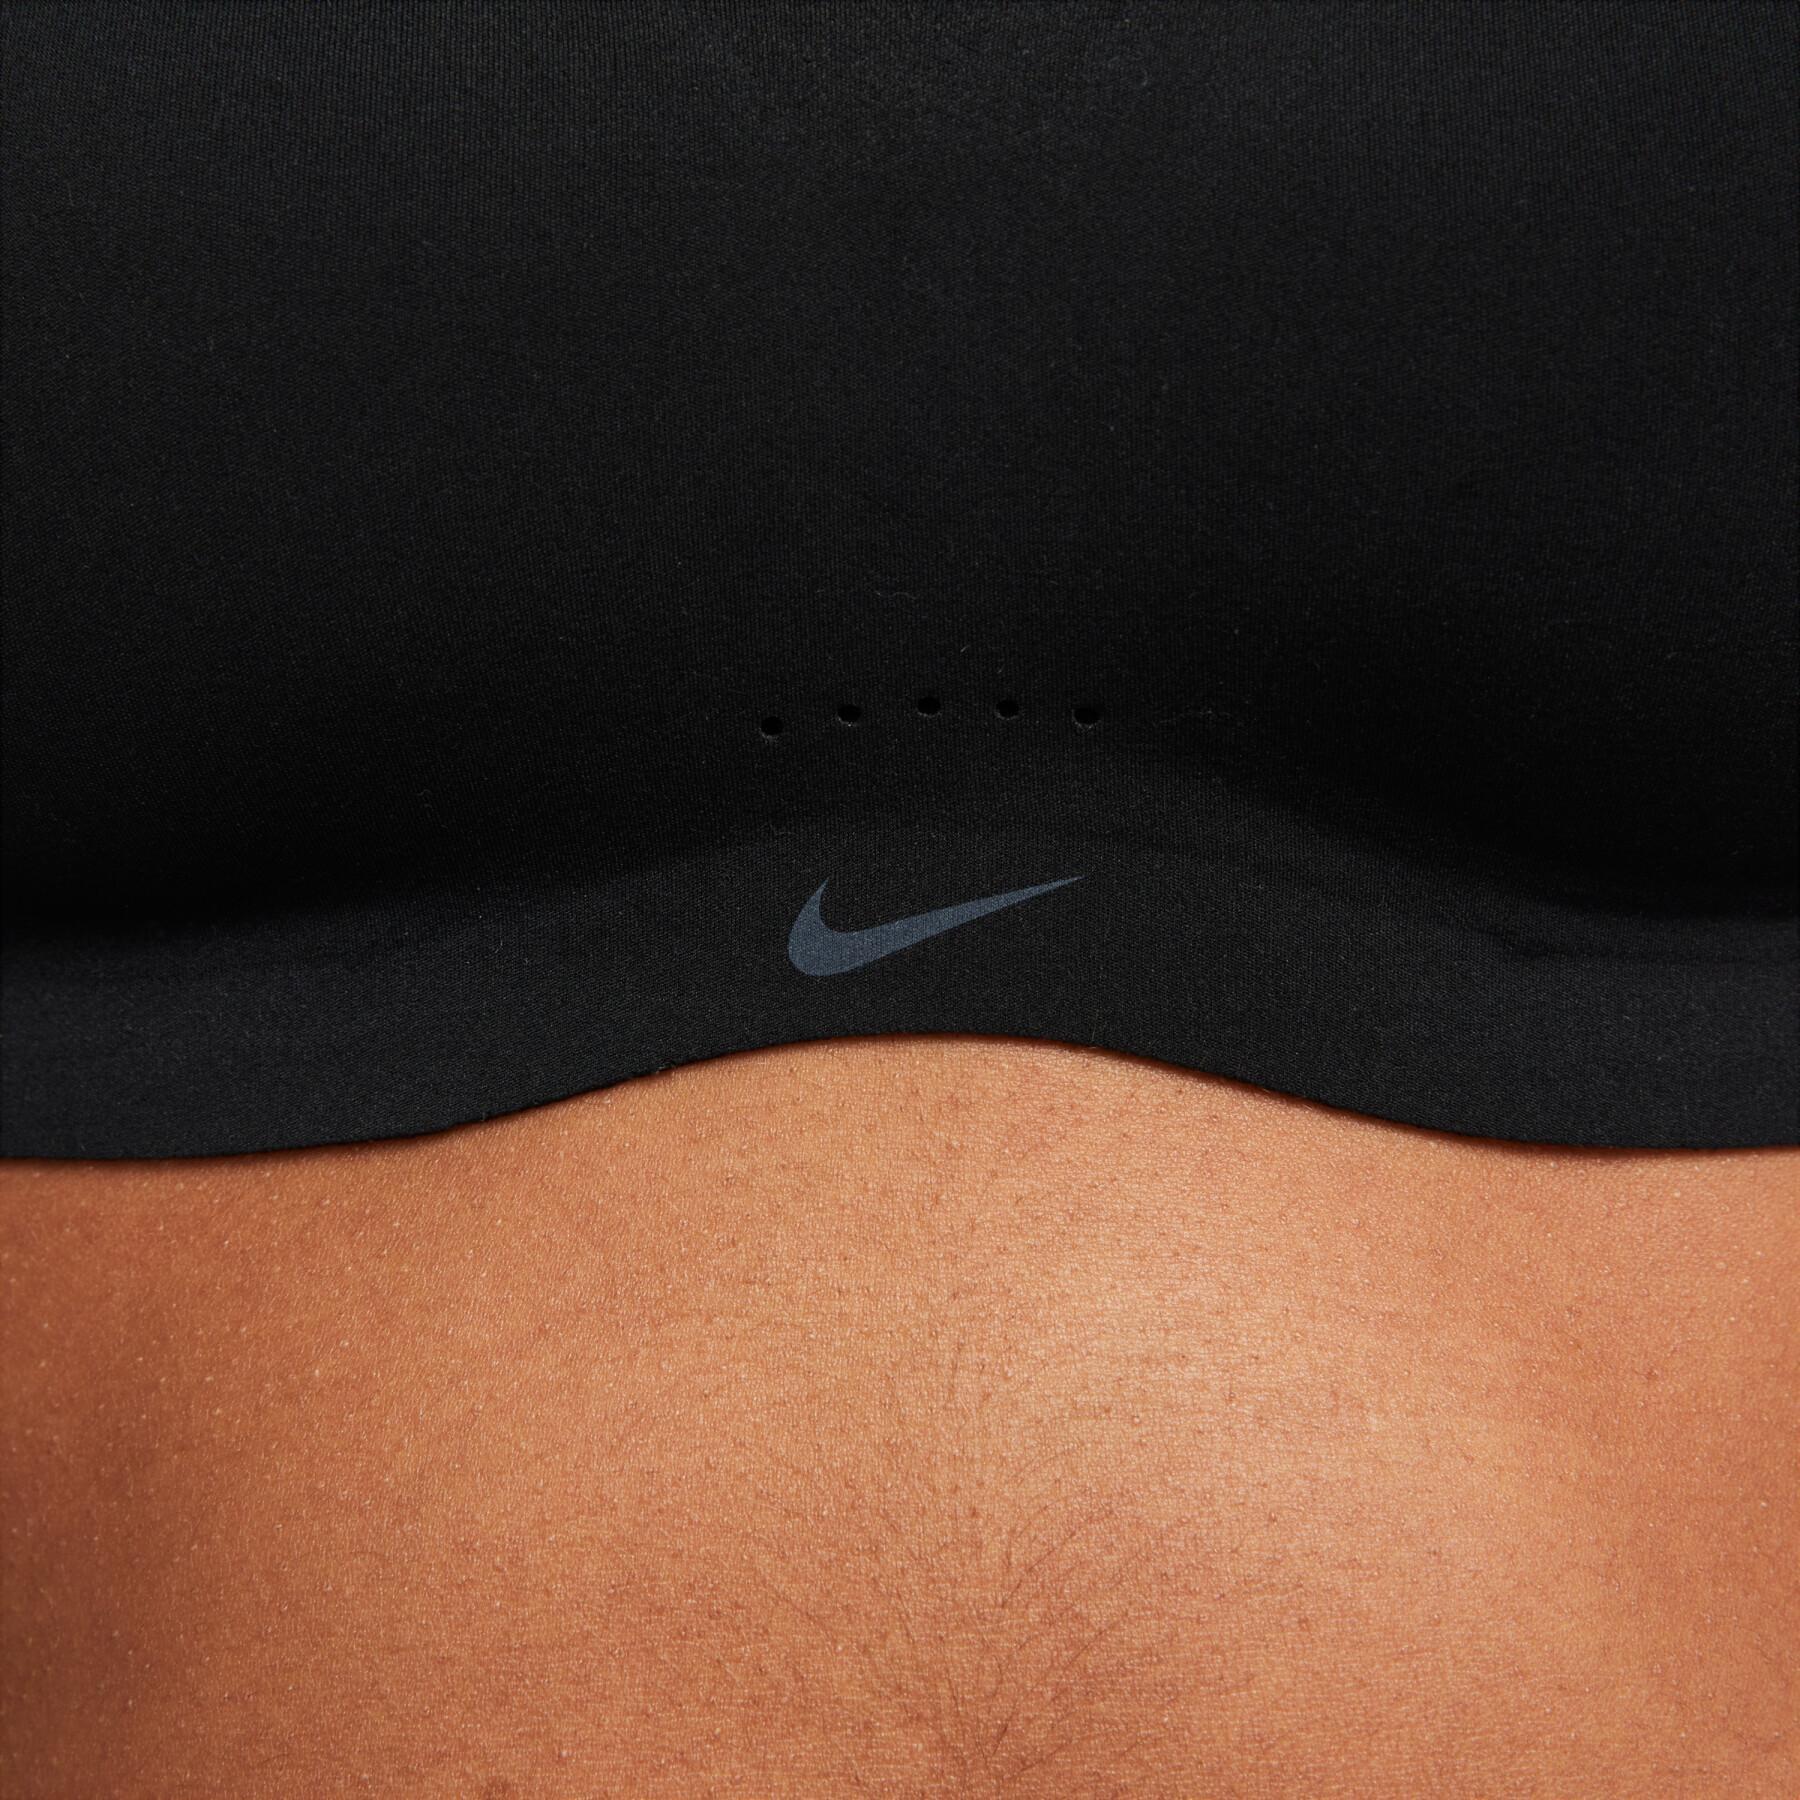 Women's bra Nike Alate Minimalist - Bras - Women - Yoga